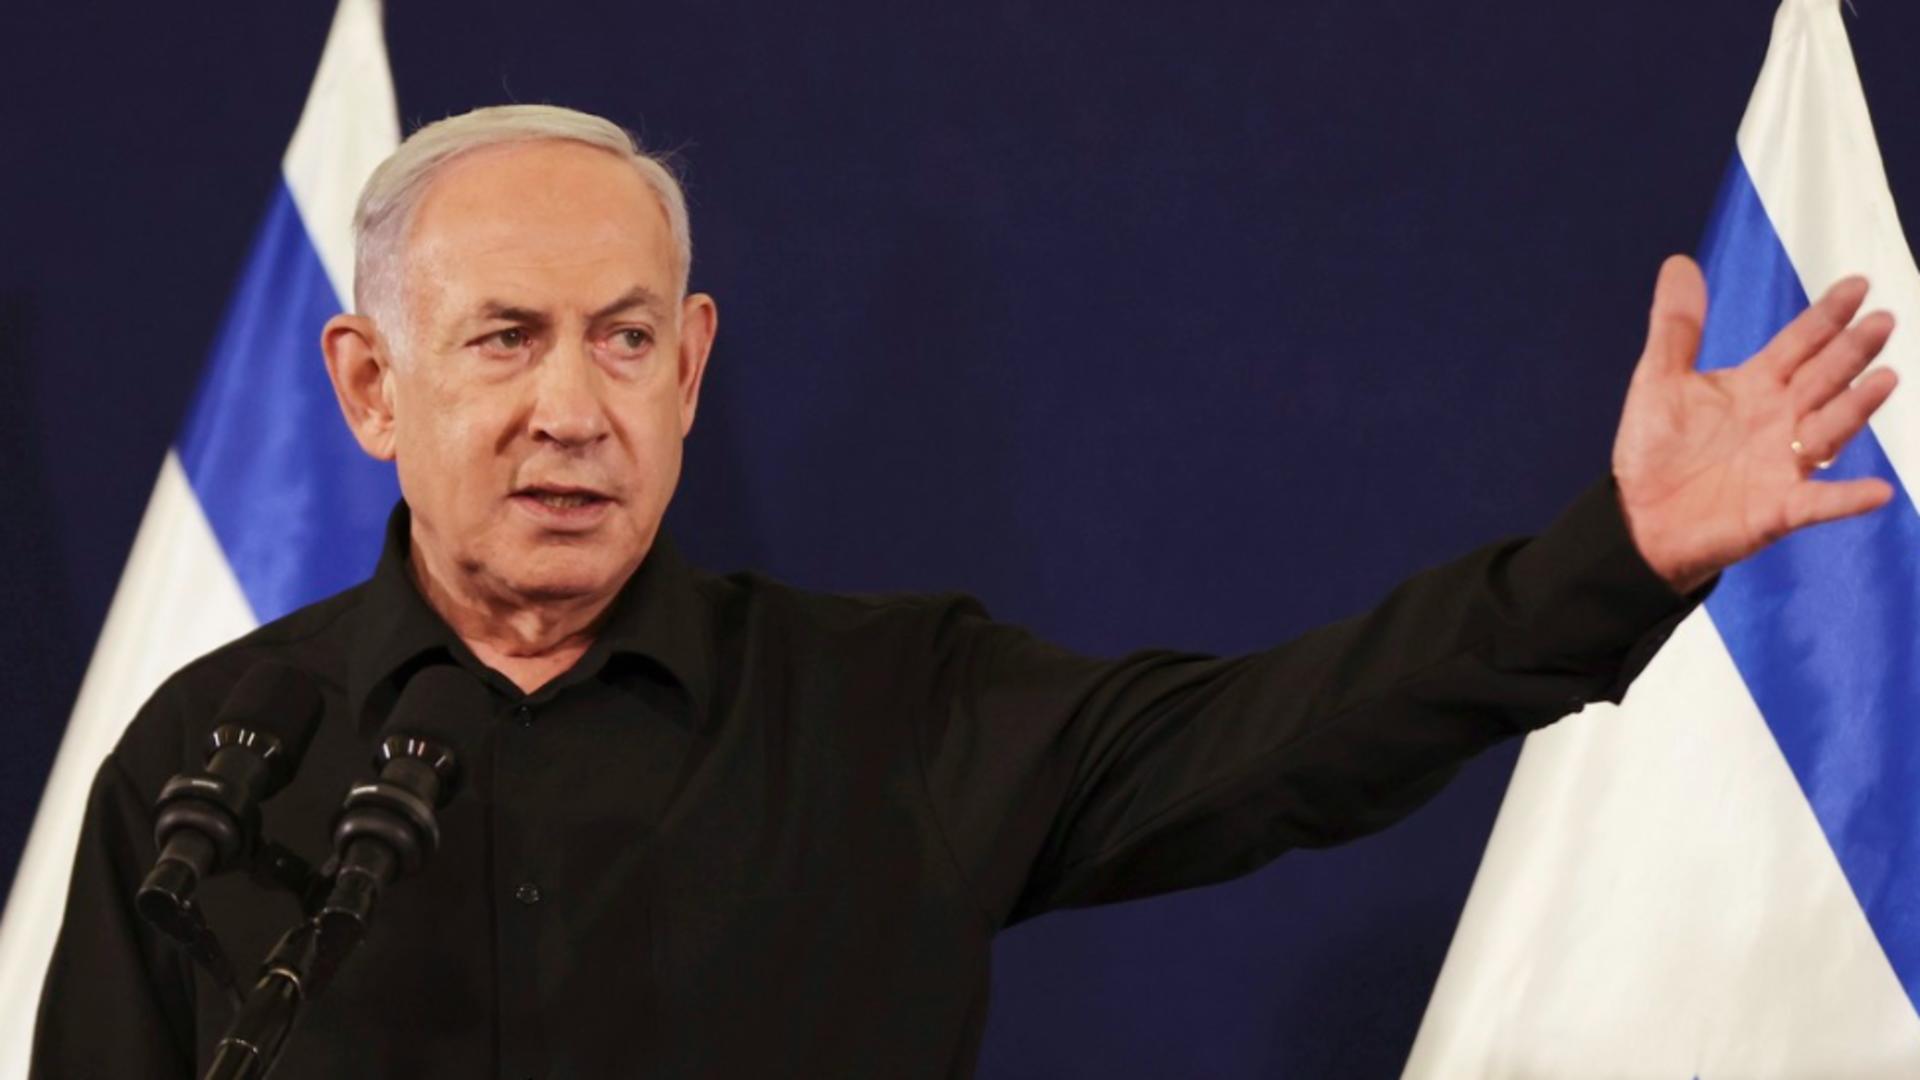 Netanyahu citează din Biblie în cel mai recent discurs al său